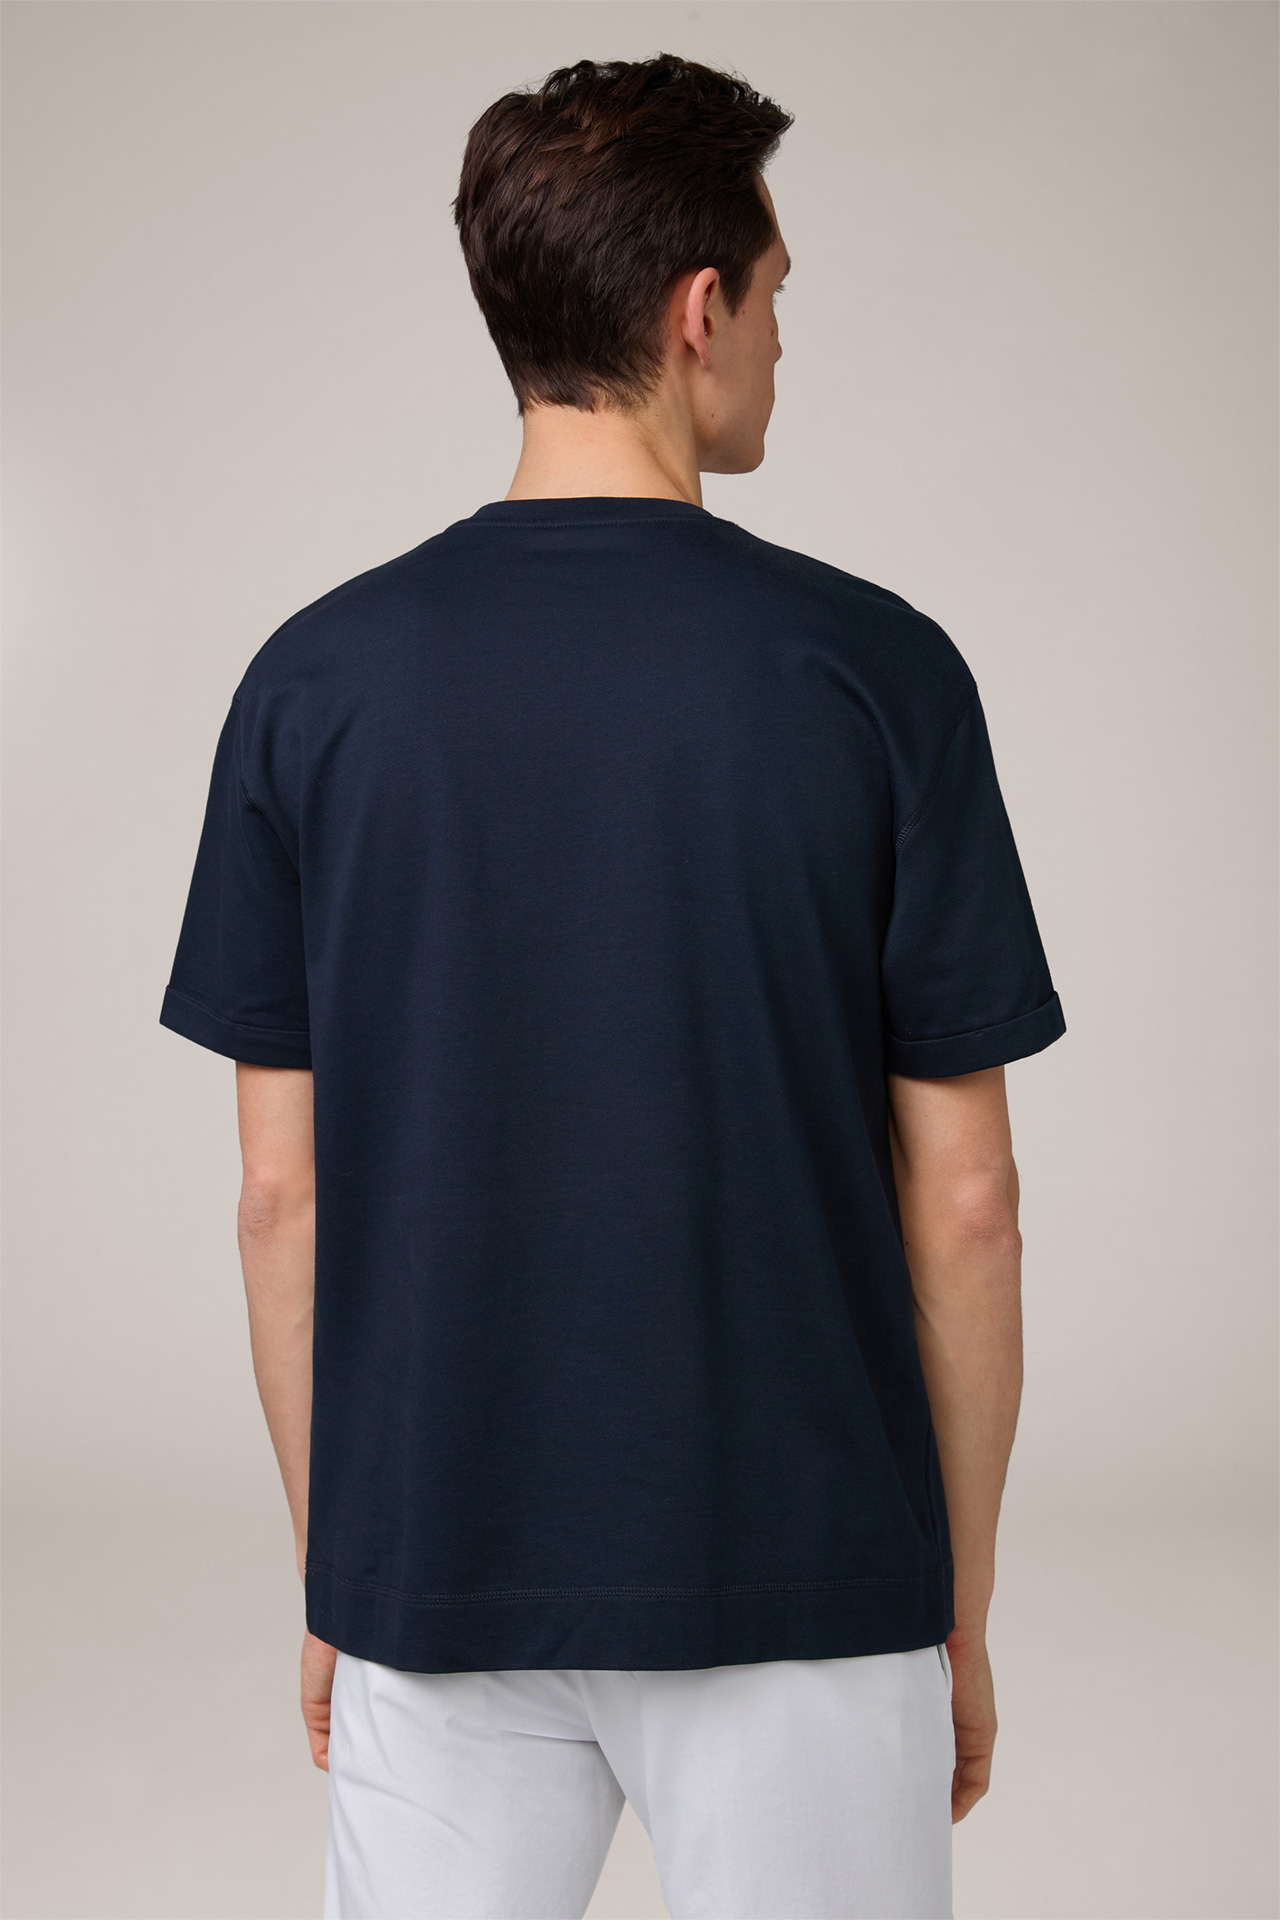 Sevo Lightweight Cotton Sweatshirt T-Shirt in Navy